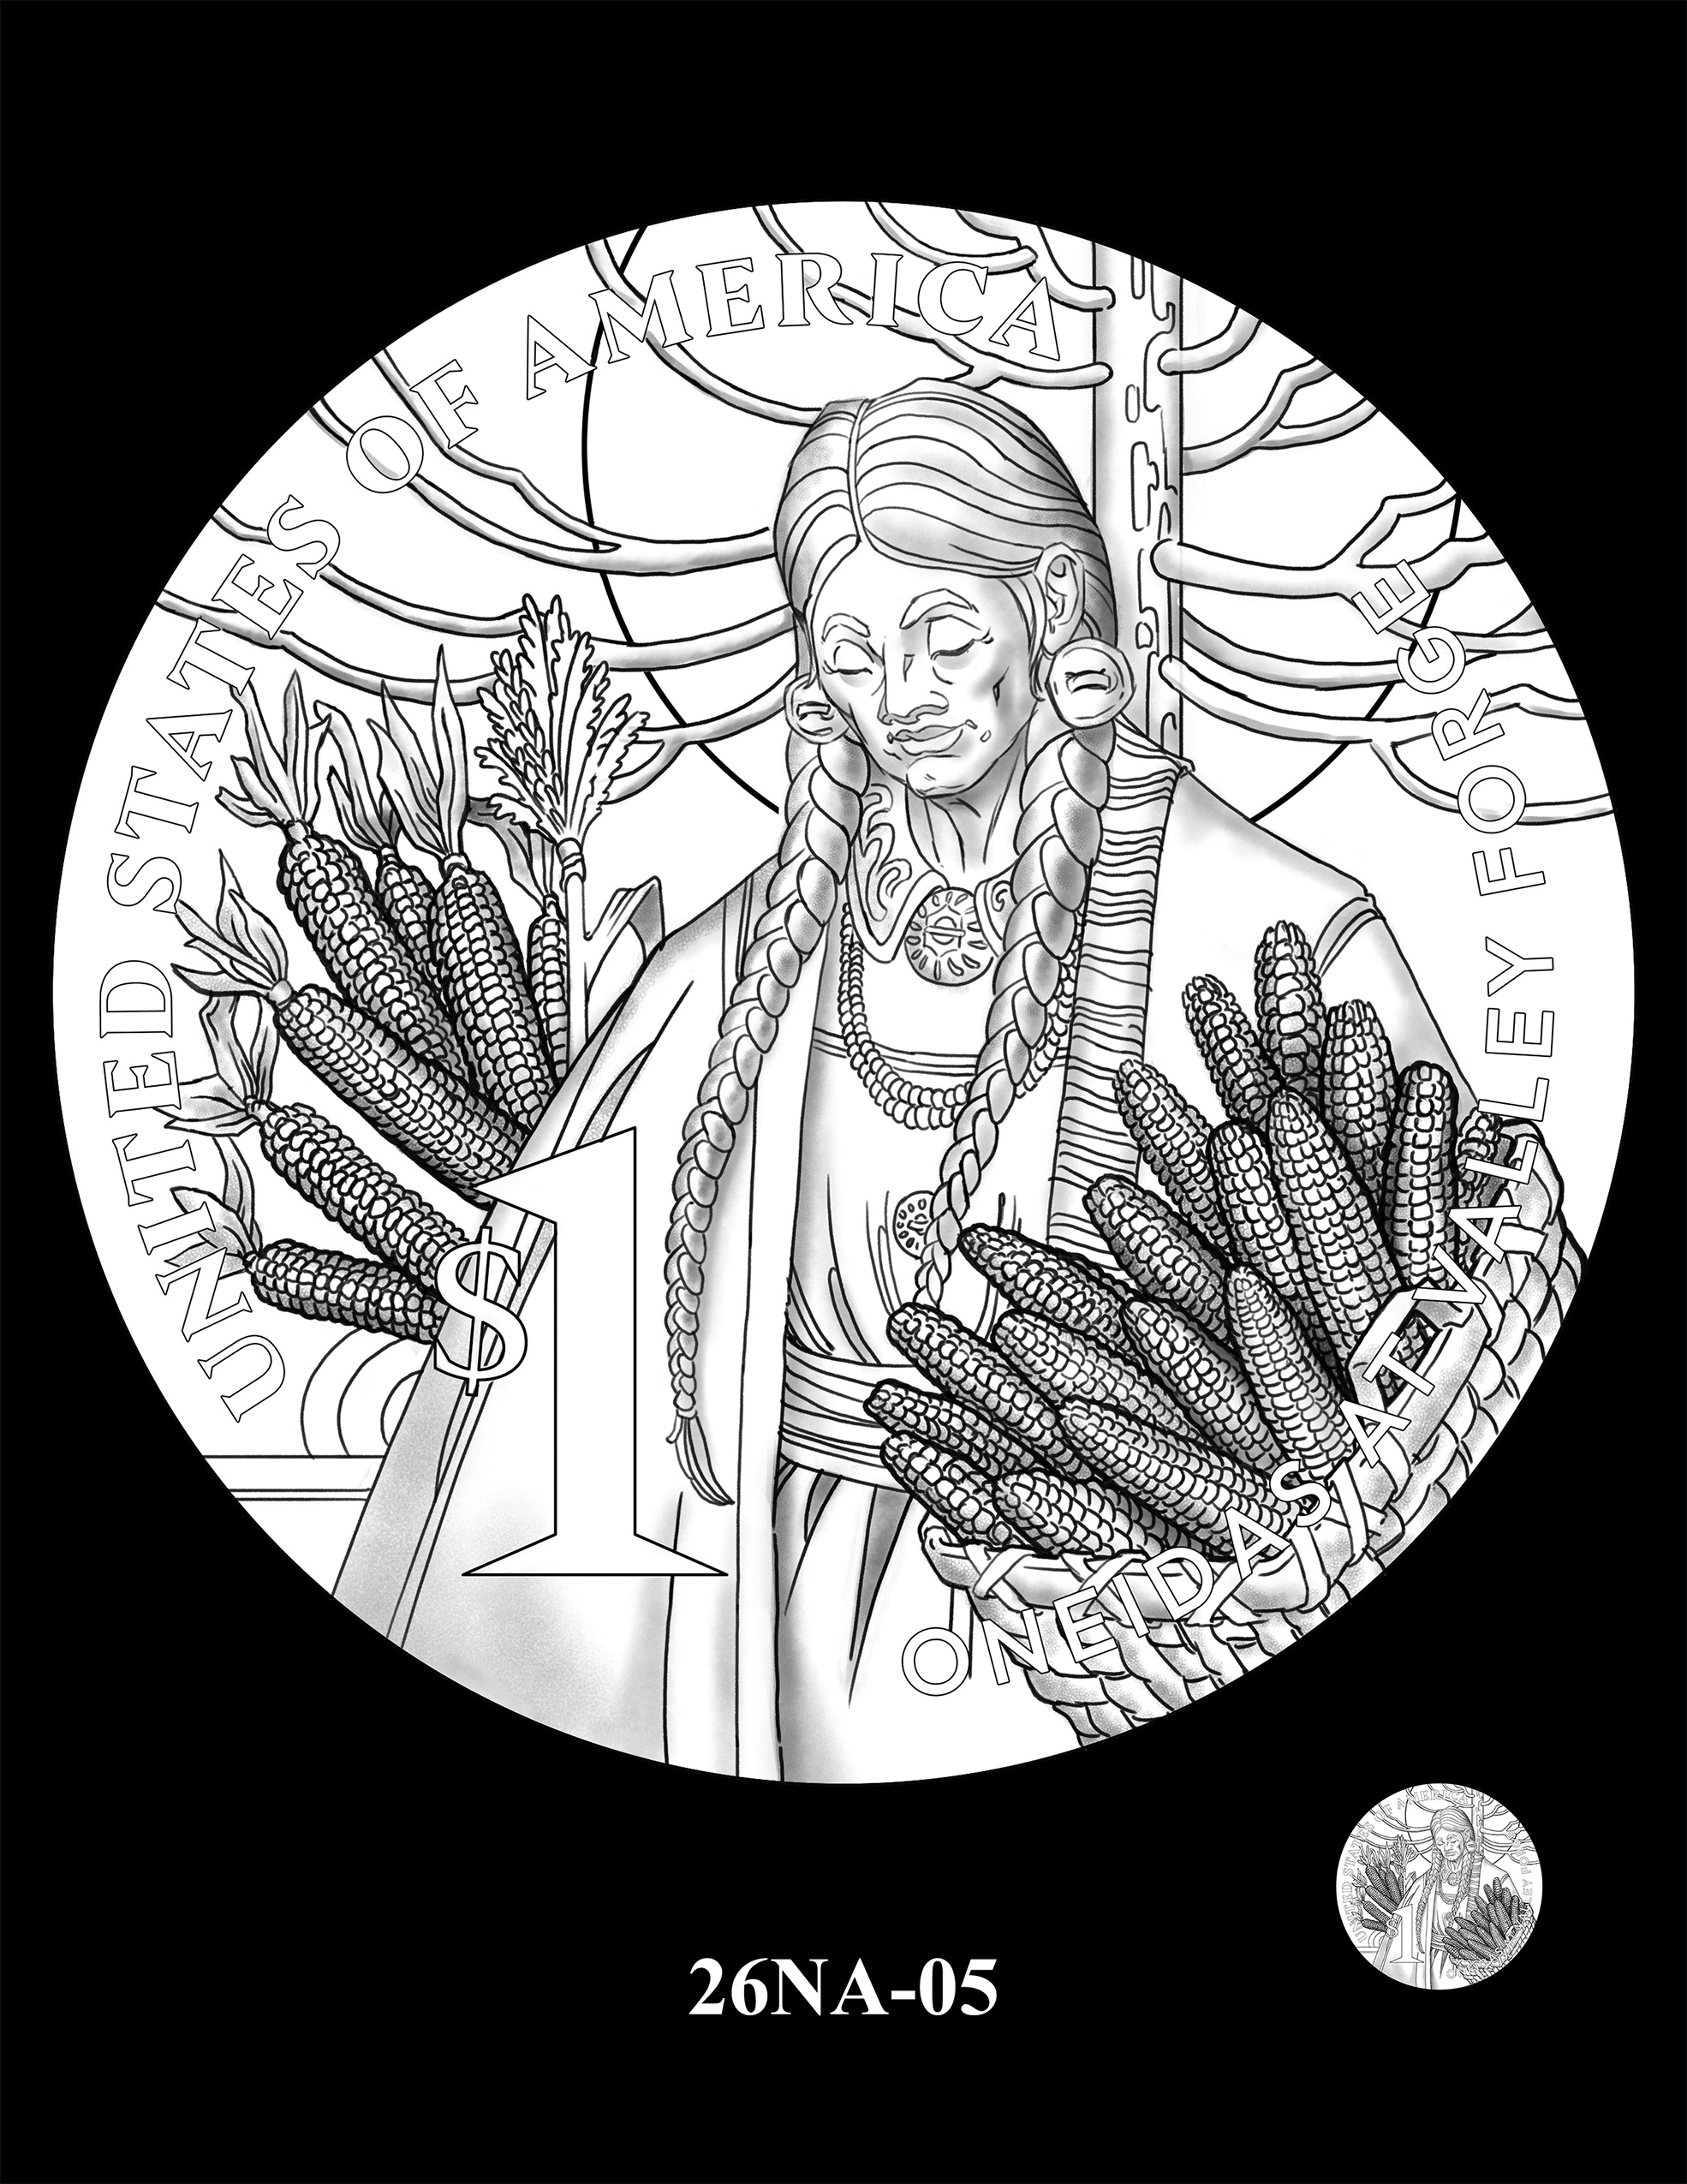 26NA-05 -- 2026 Native American $1 Coin